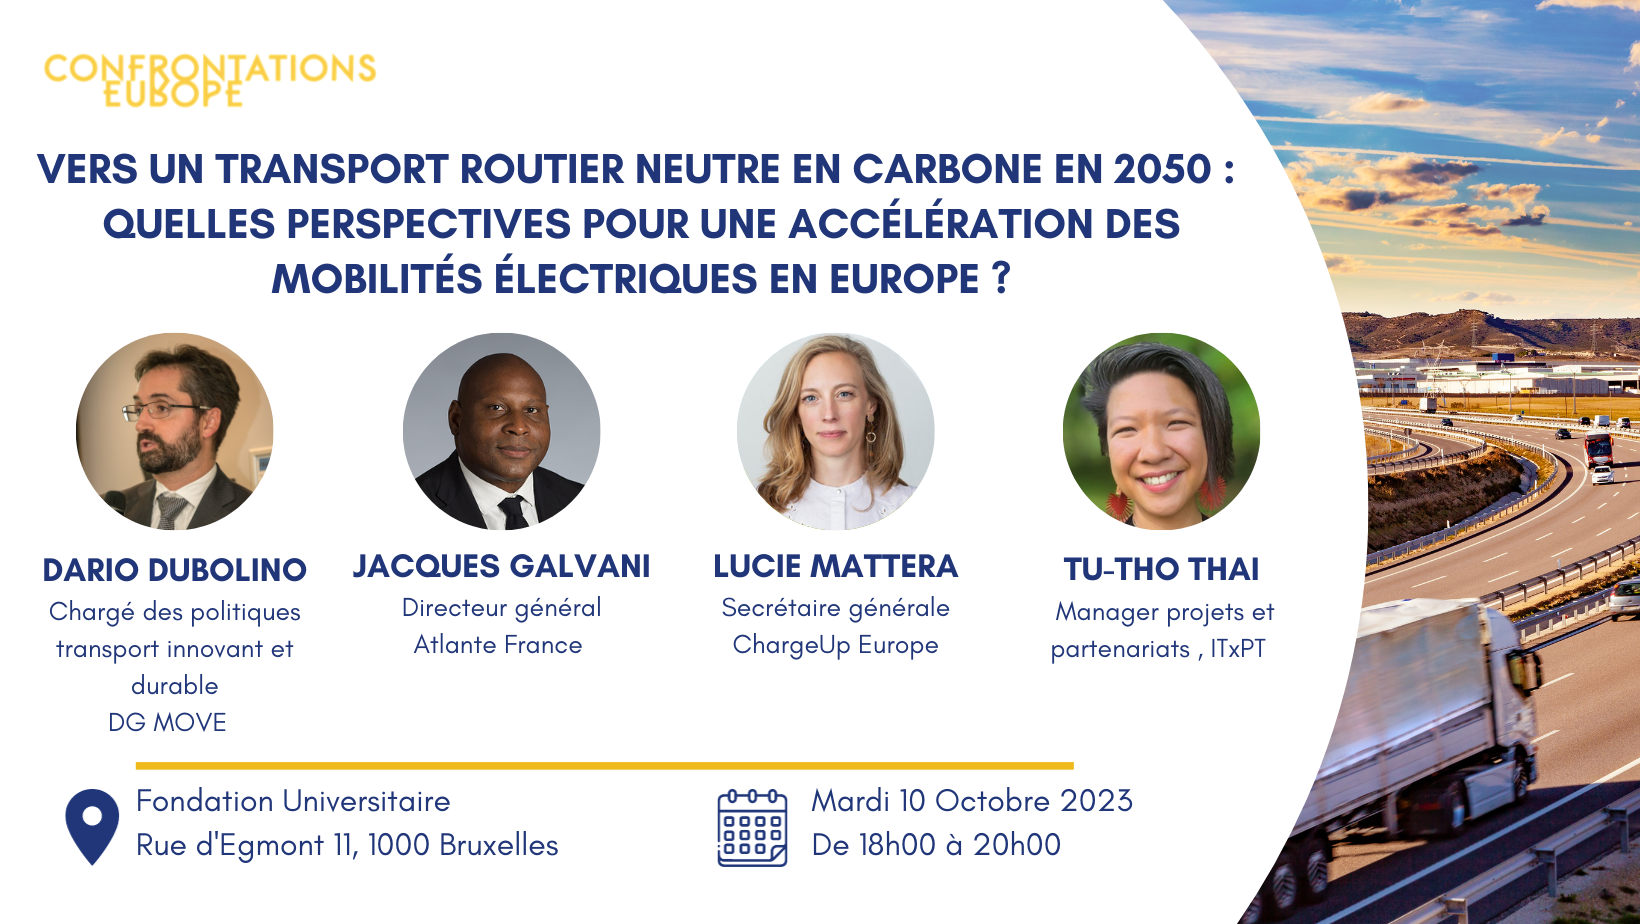 Compte rendu de la conférence du 10 octobre 2023 - Vers un transport routier neutre en carbone en 2050